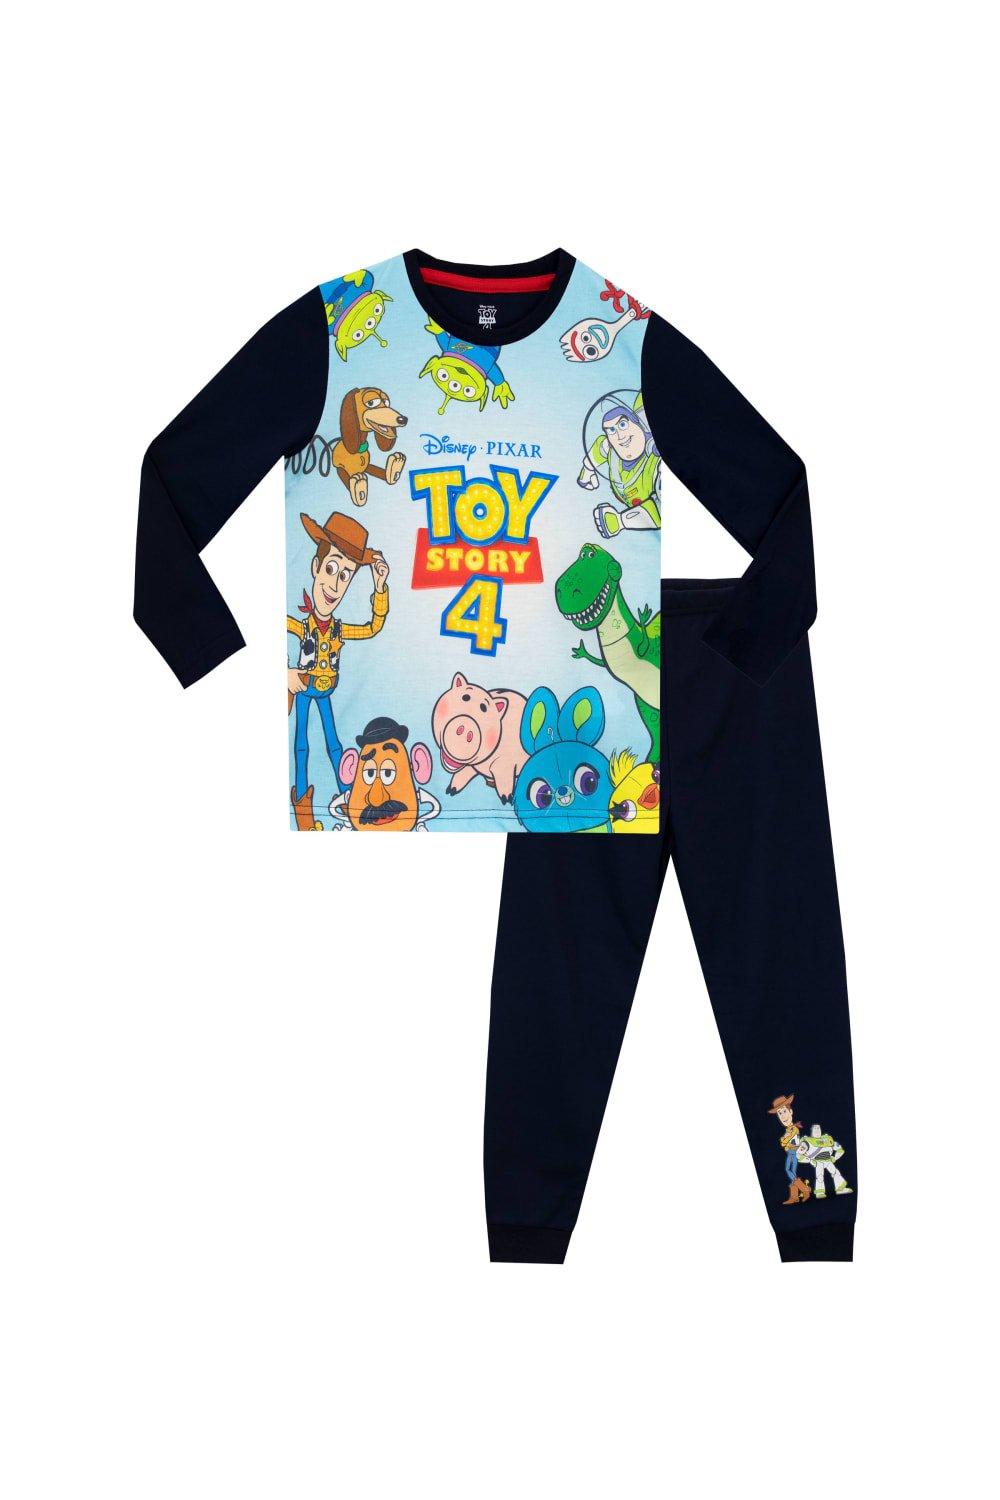 Toy Story Slinky Woody and Buzz Lightyear Pyjamas